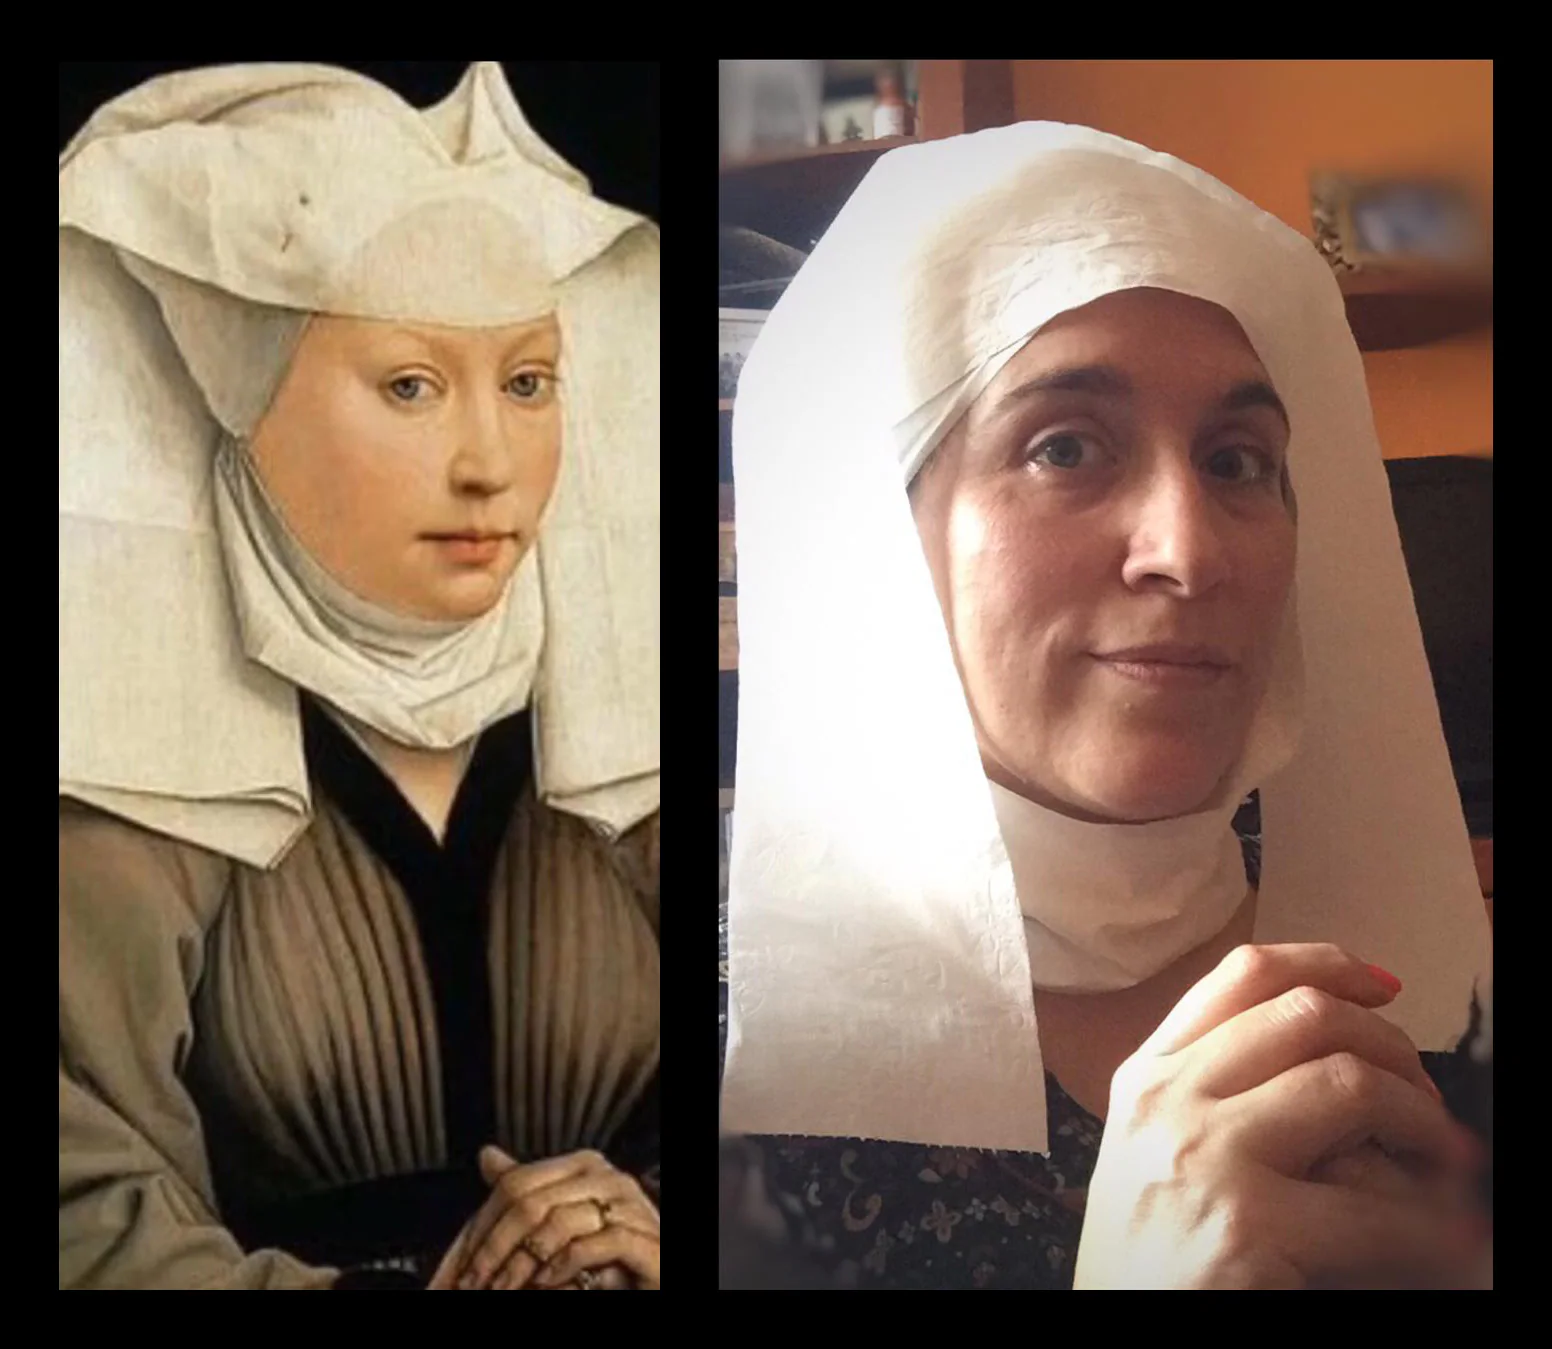 Título del cuadro/fotografía: ‘Retrato de una mujer joven’. Autor/a: Rogier van der Weyden. Pintado: entre 1435-1440. Maestro/a imitador: Rebeca Salcines, Maestra de Inglés.